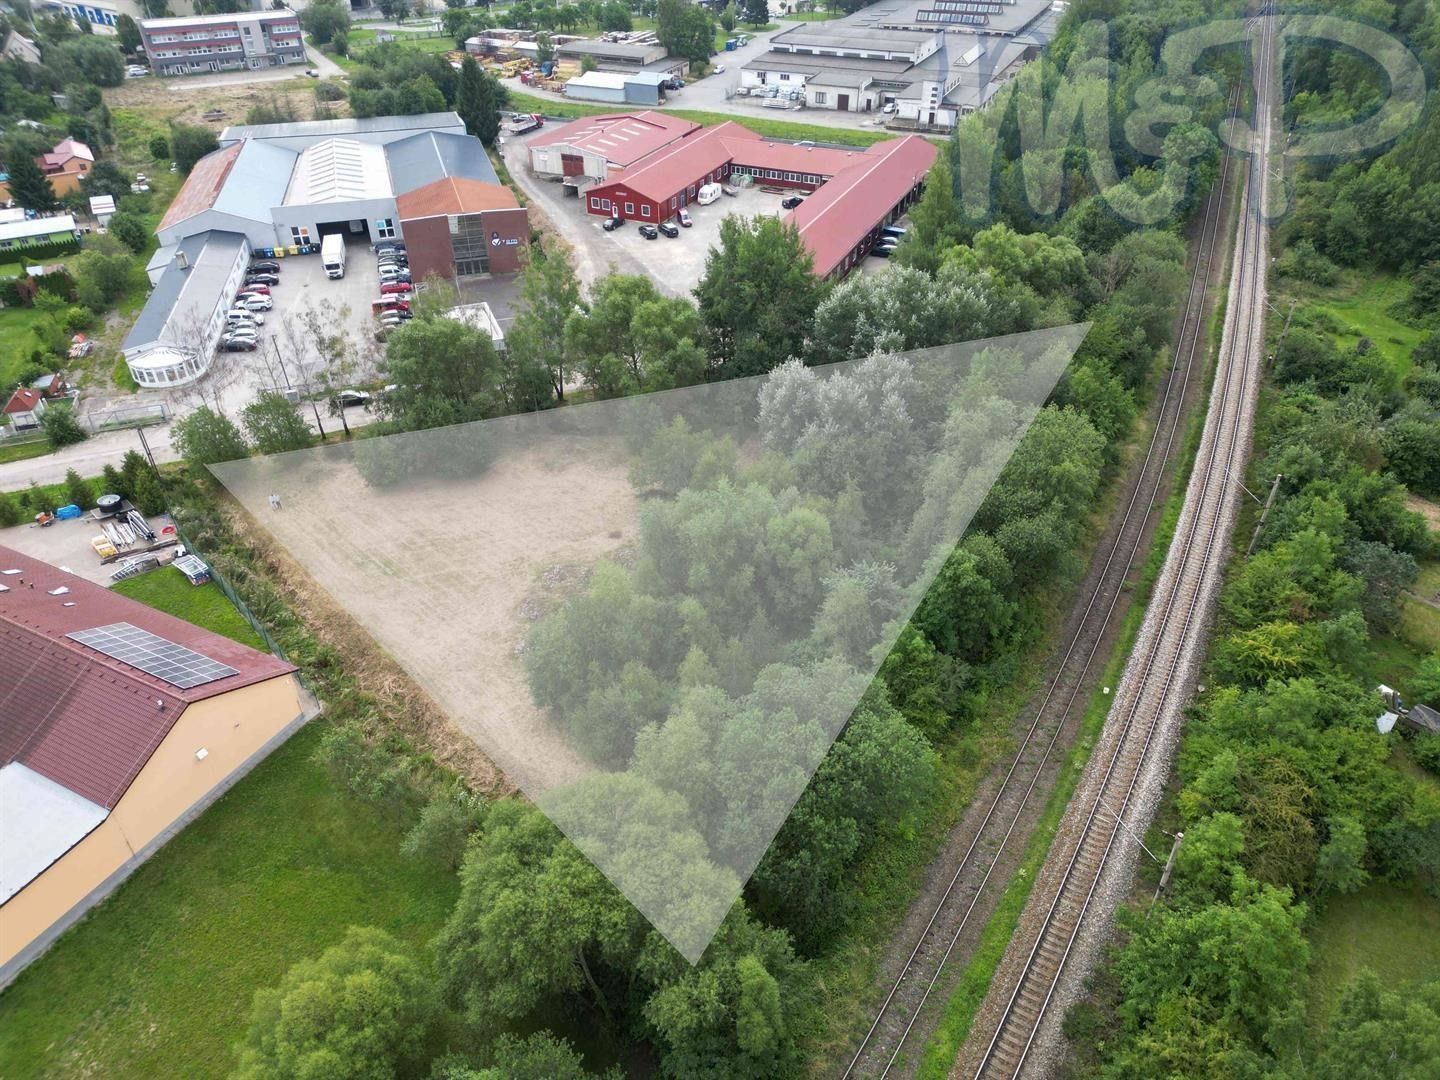 Prodej komerční pozemek - Jihlava, 3 845 m²